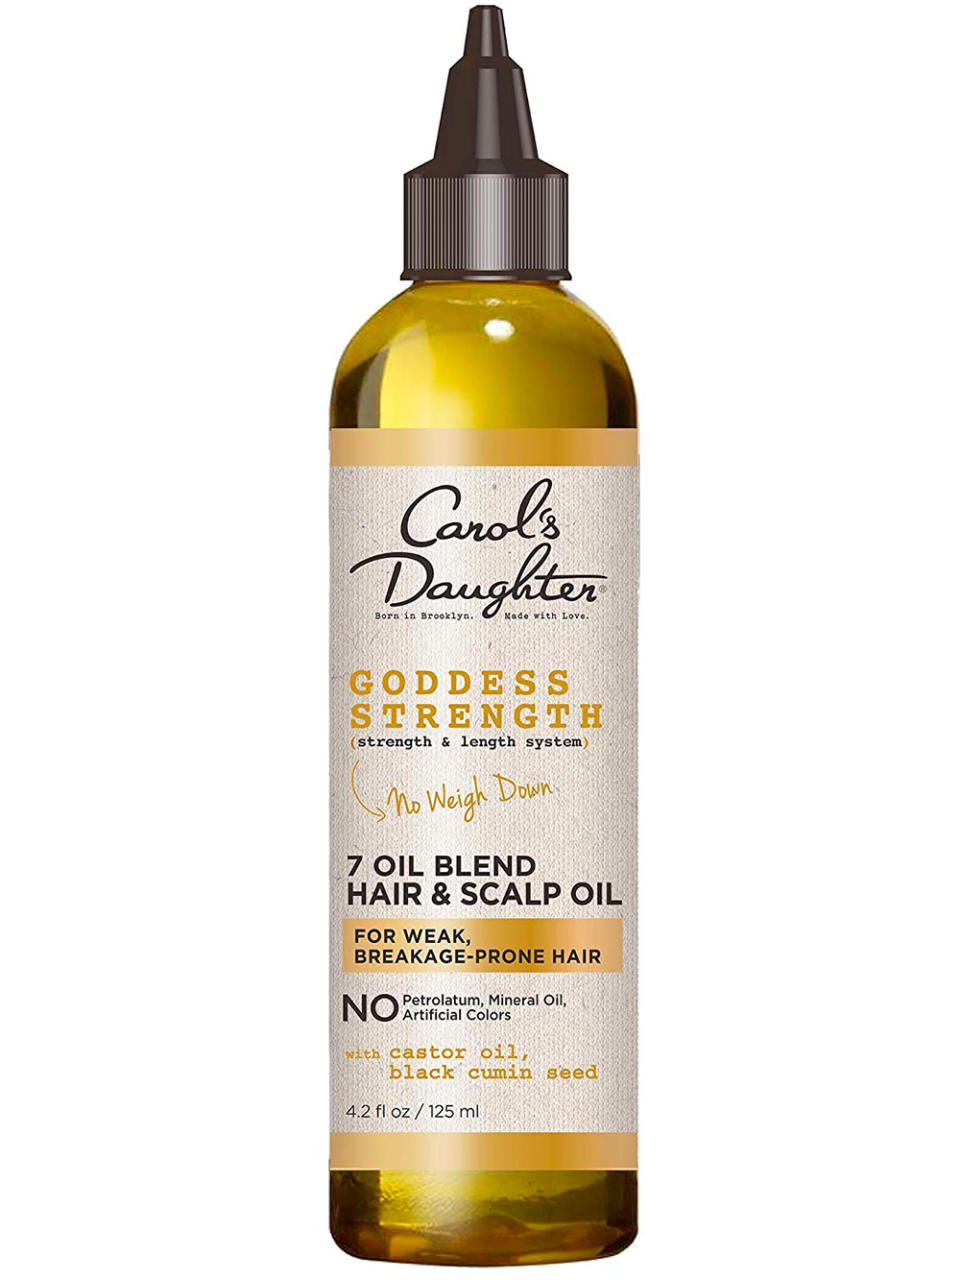 Carol’s Daughter Goddess Strength 7 Oil Blend Scalp & Hair Treatment Oil 